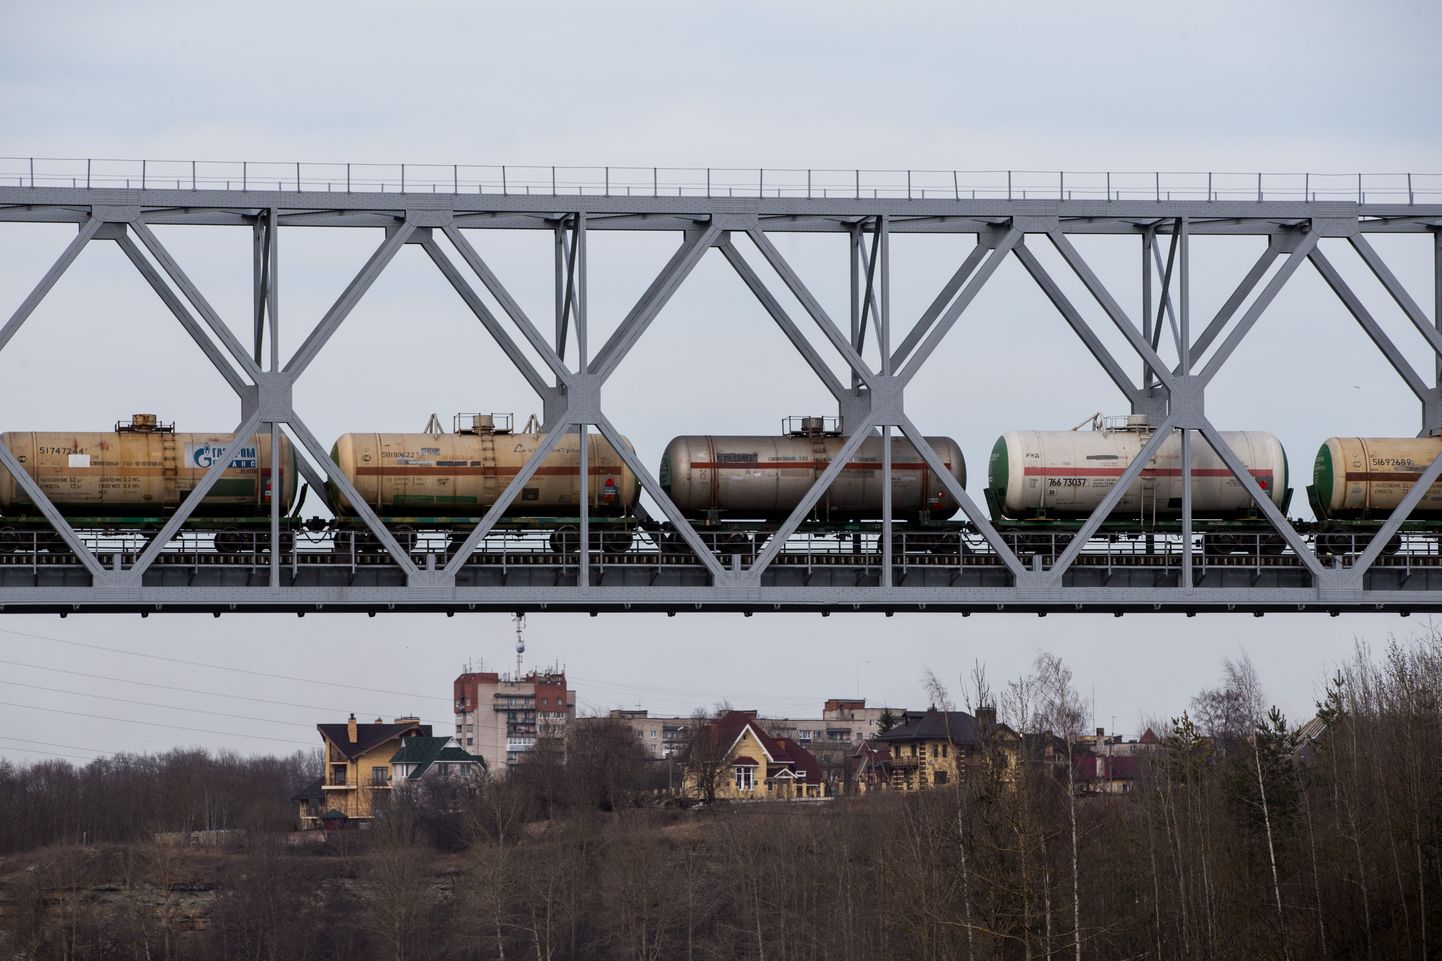 Eesti-Venemaa vaheline raudteesild Narvas. Pilt on illustratiivne. FOTO: EERO VABAMÄGI/POSTIMEES